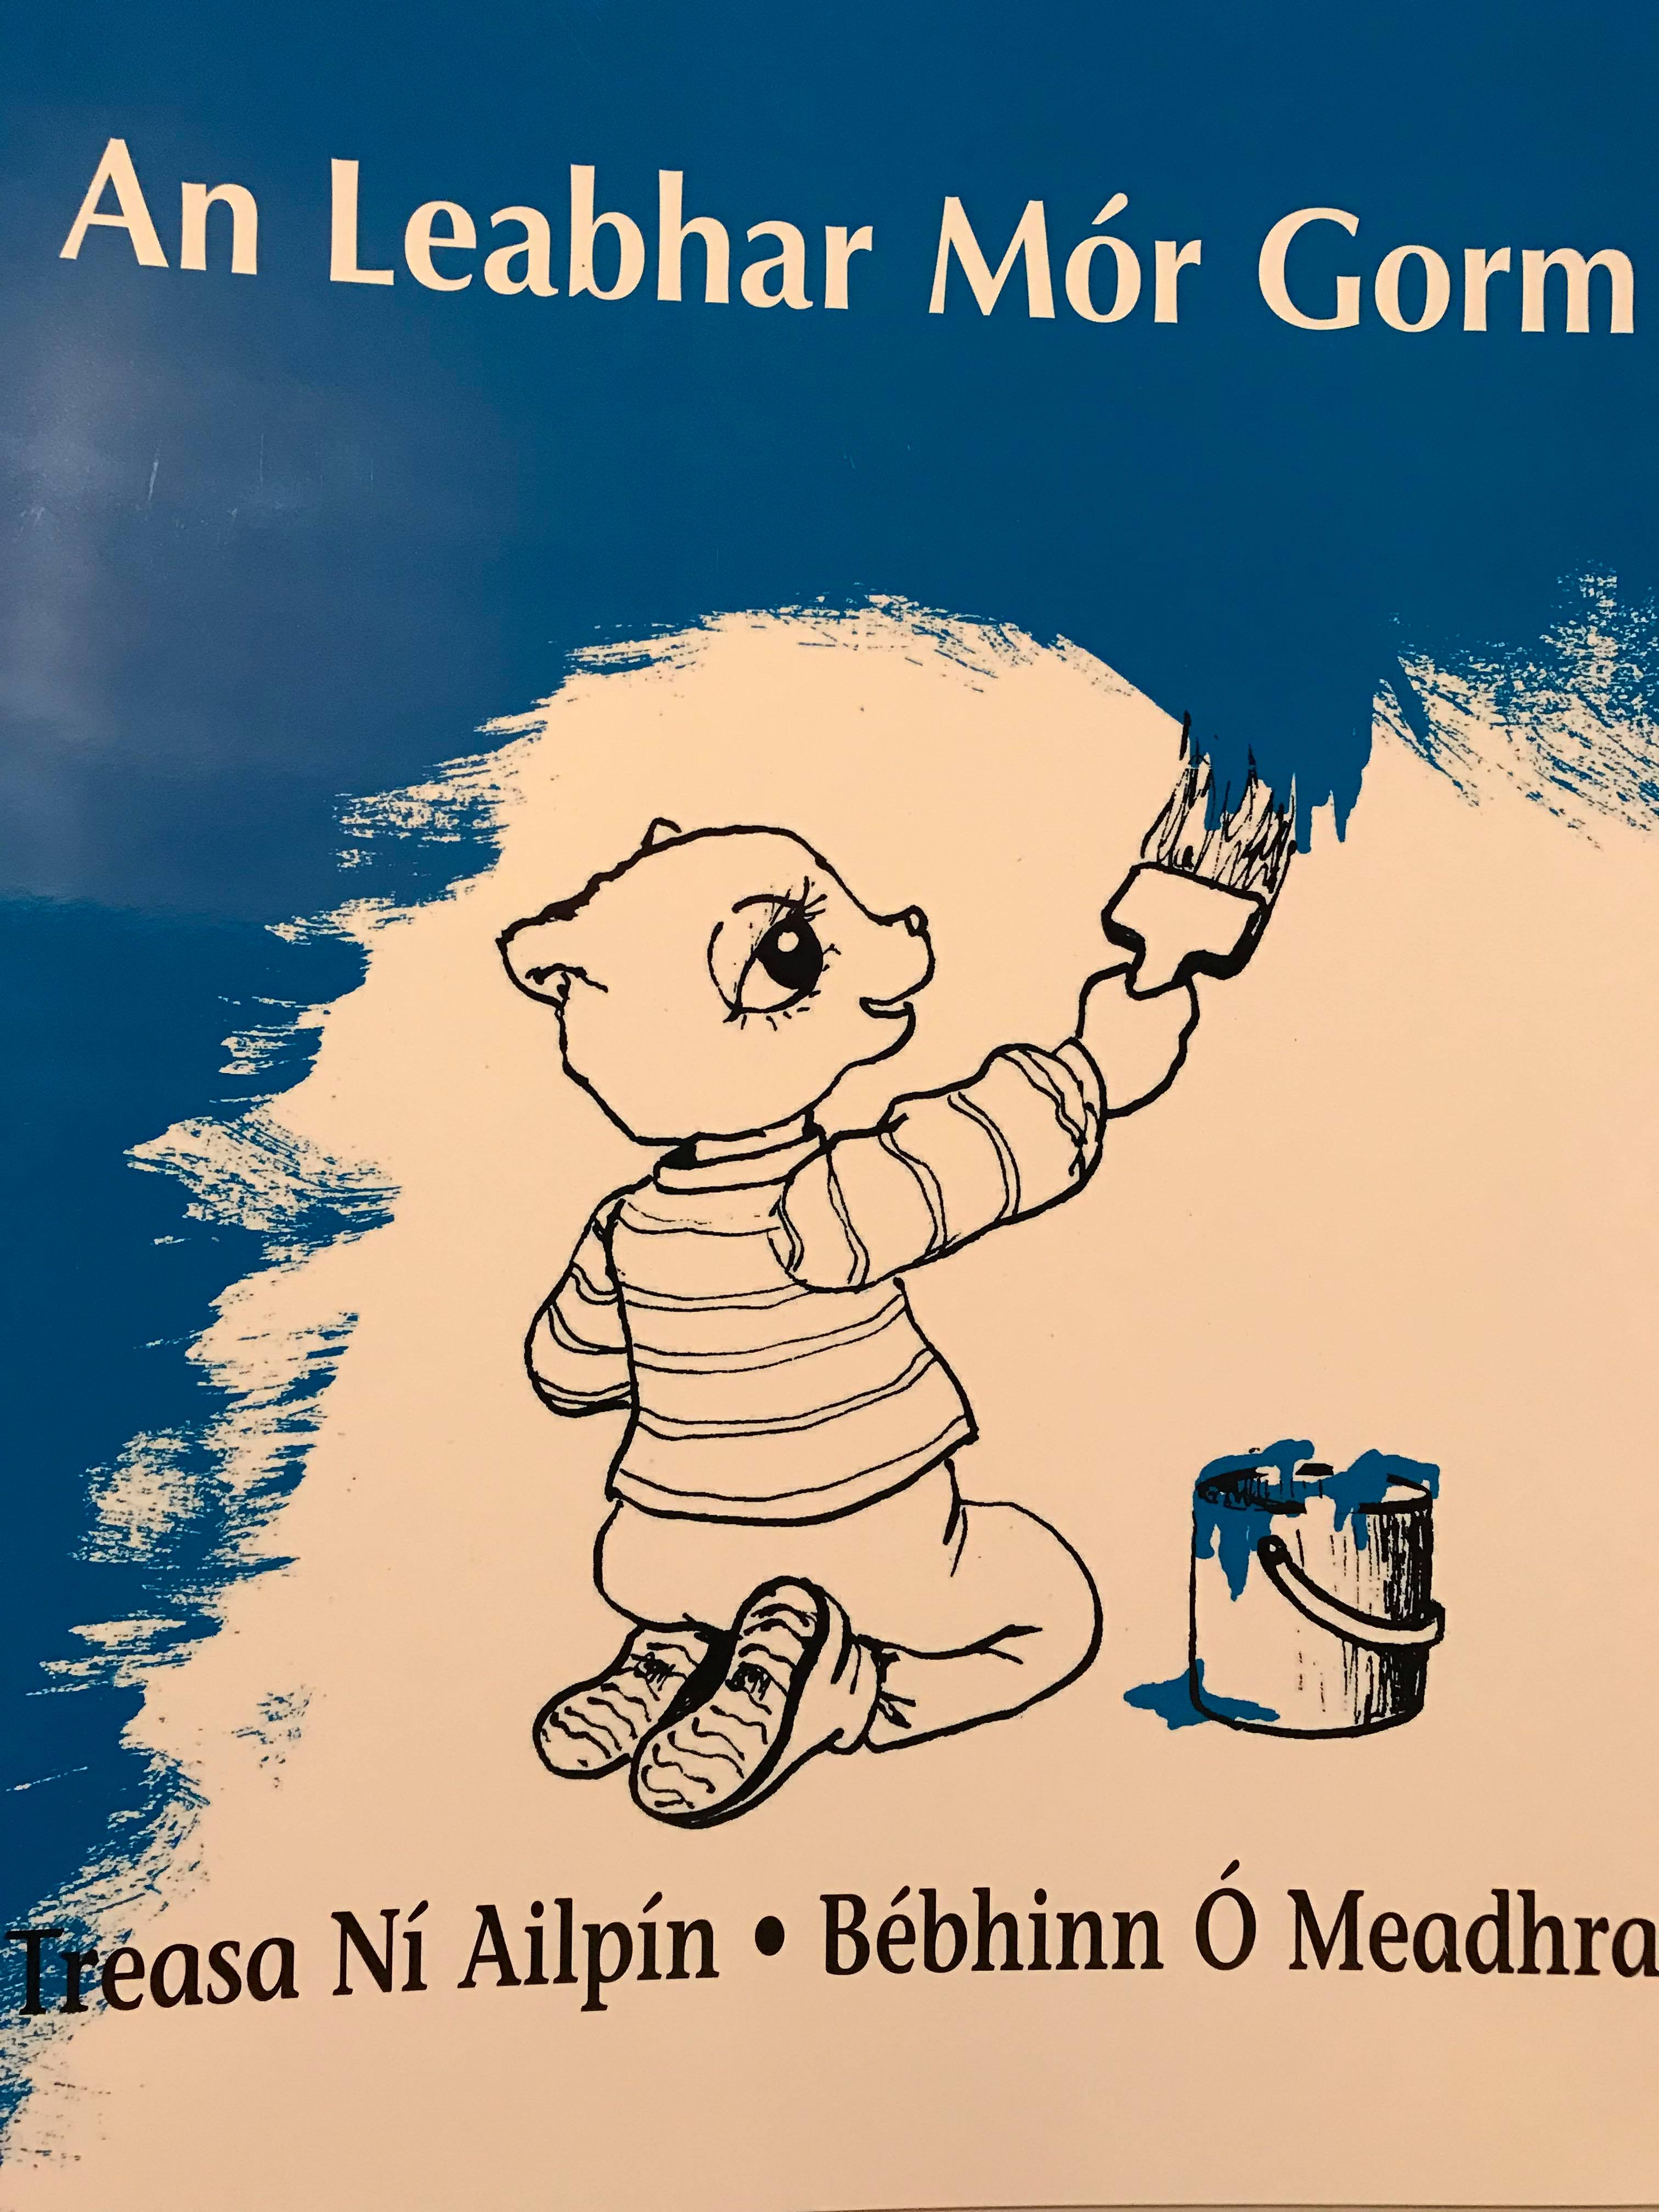 An Leabhar Mór Gorm (The Big Blue Book)